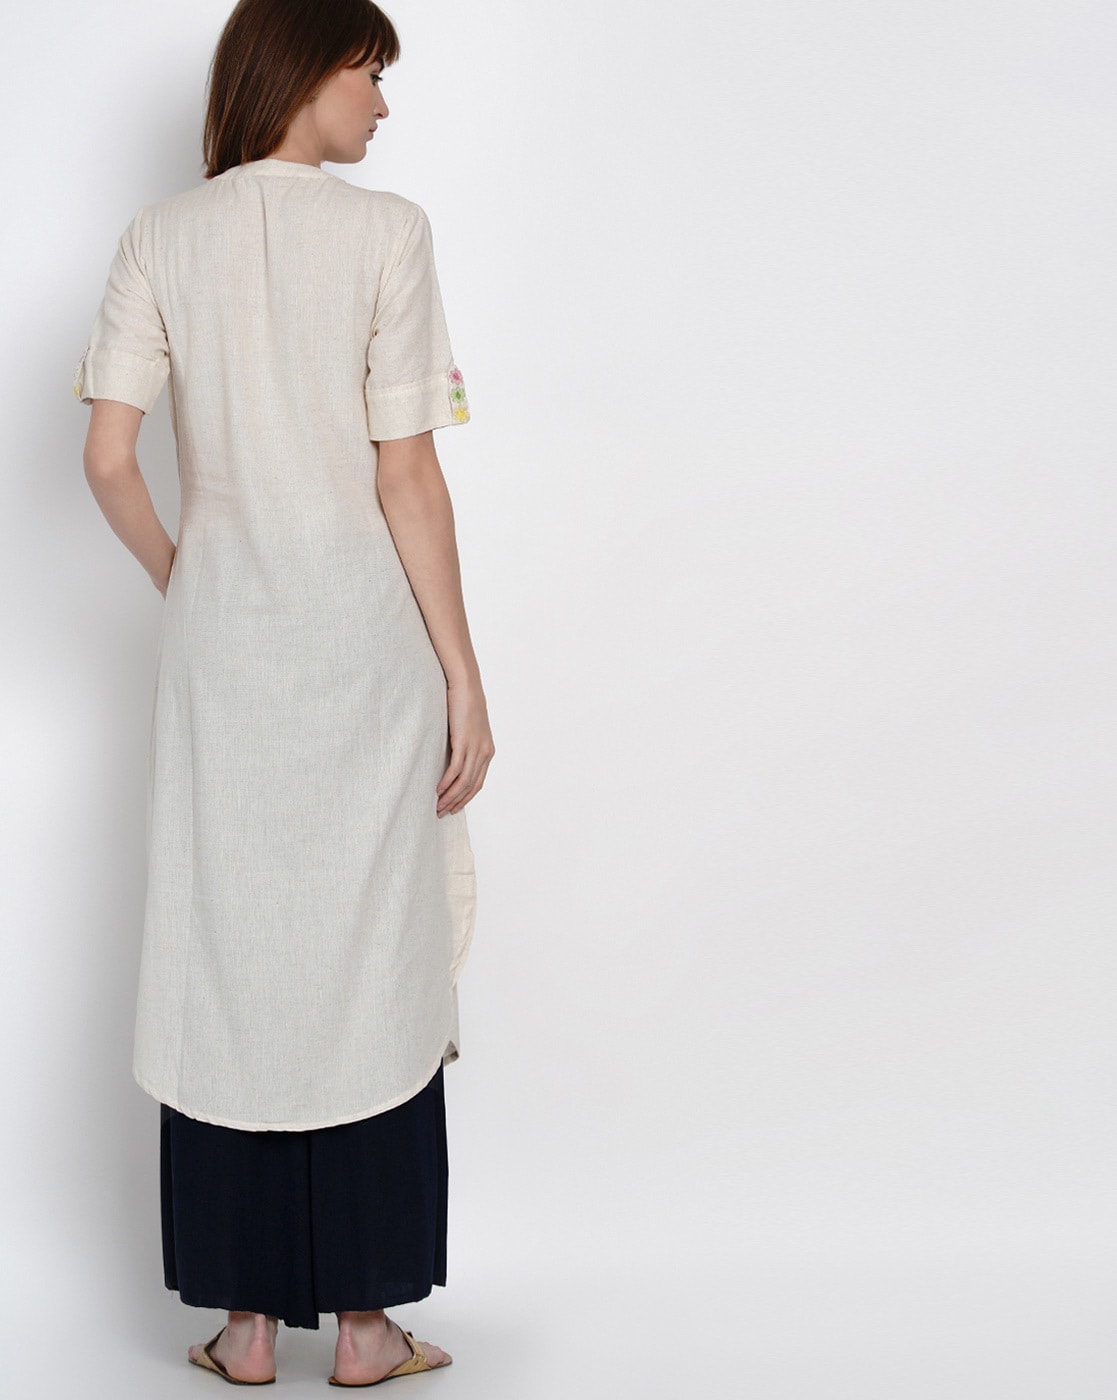 Buy Off White Kurtis & Tunics for Women by Women Republic Online | Ajio.com